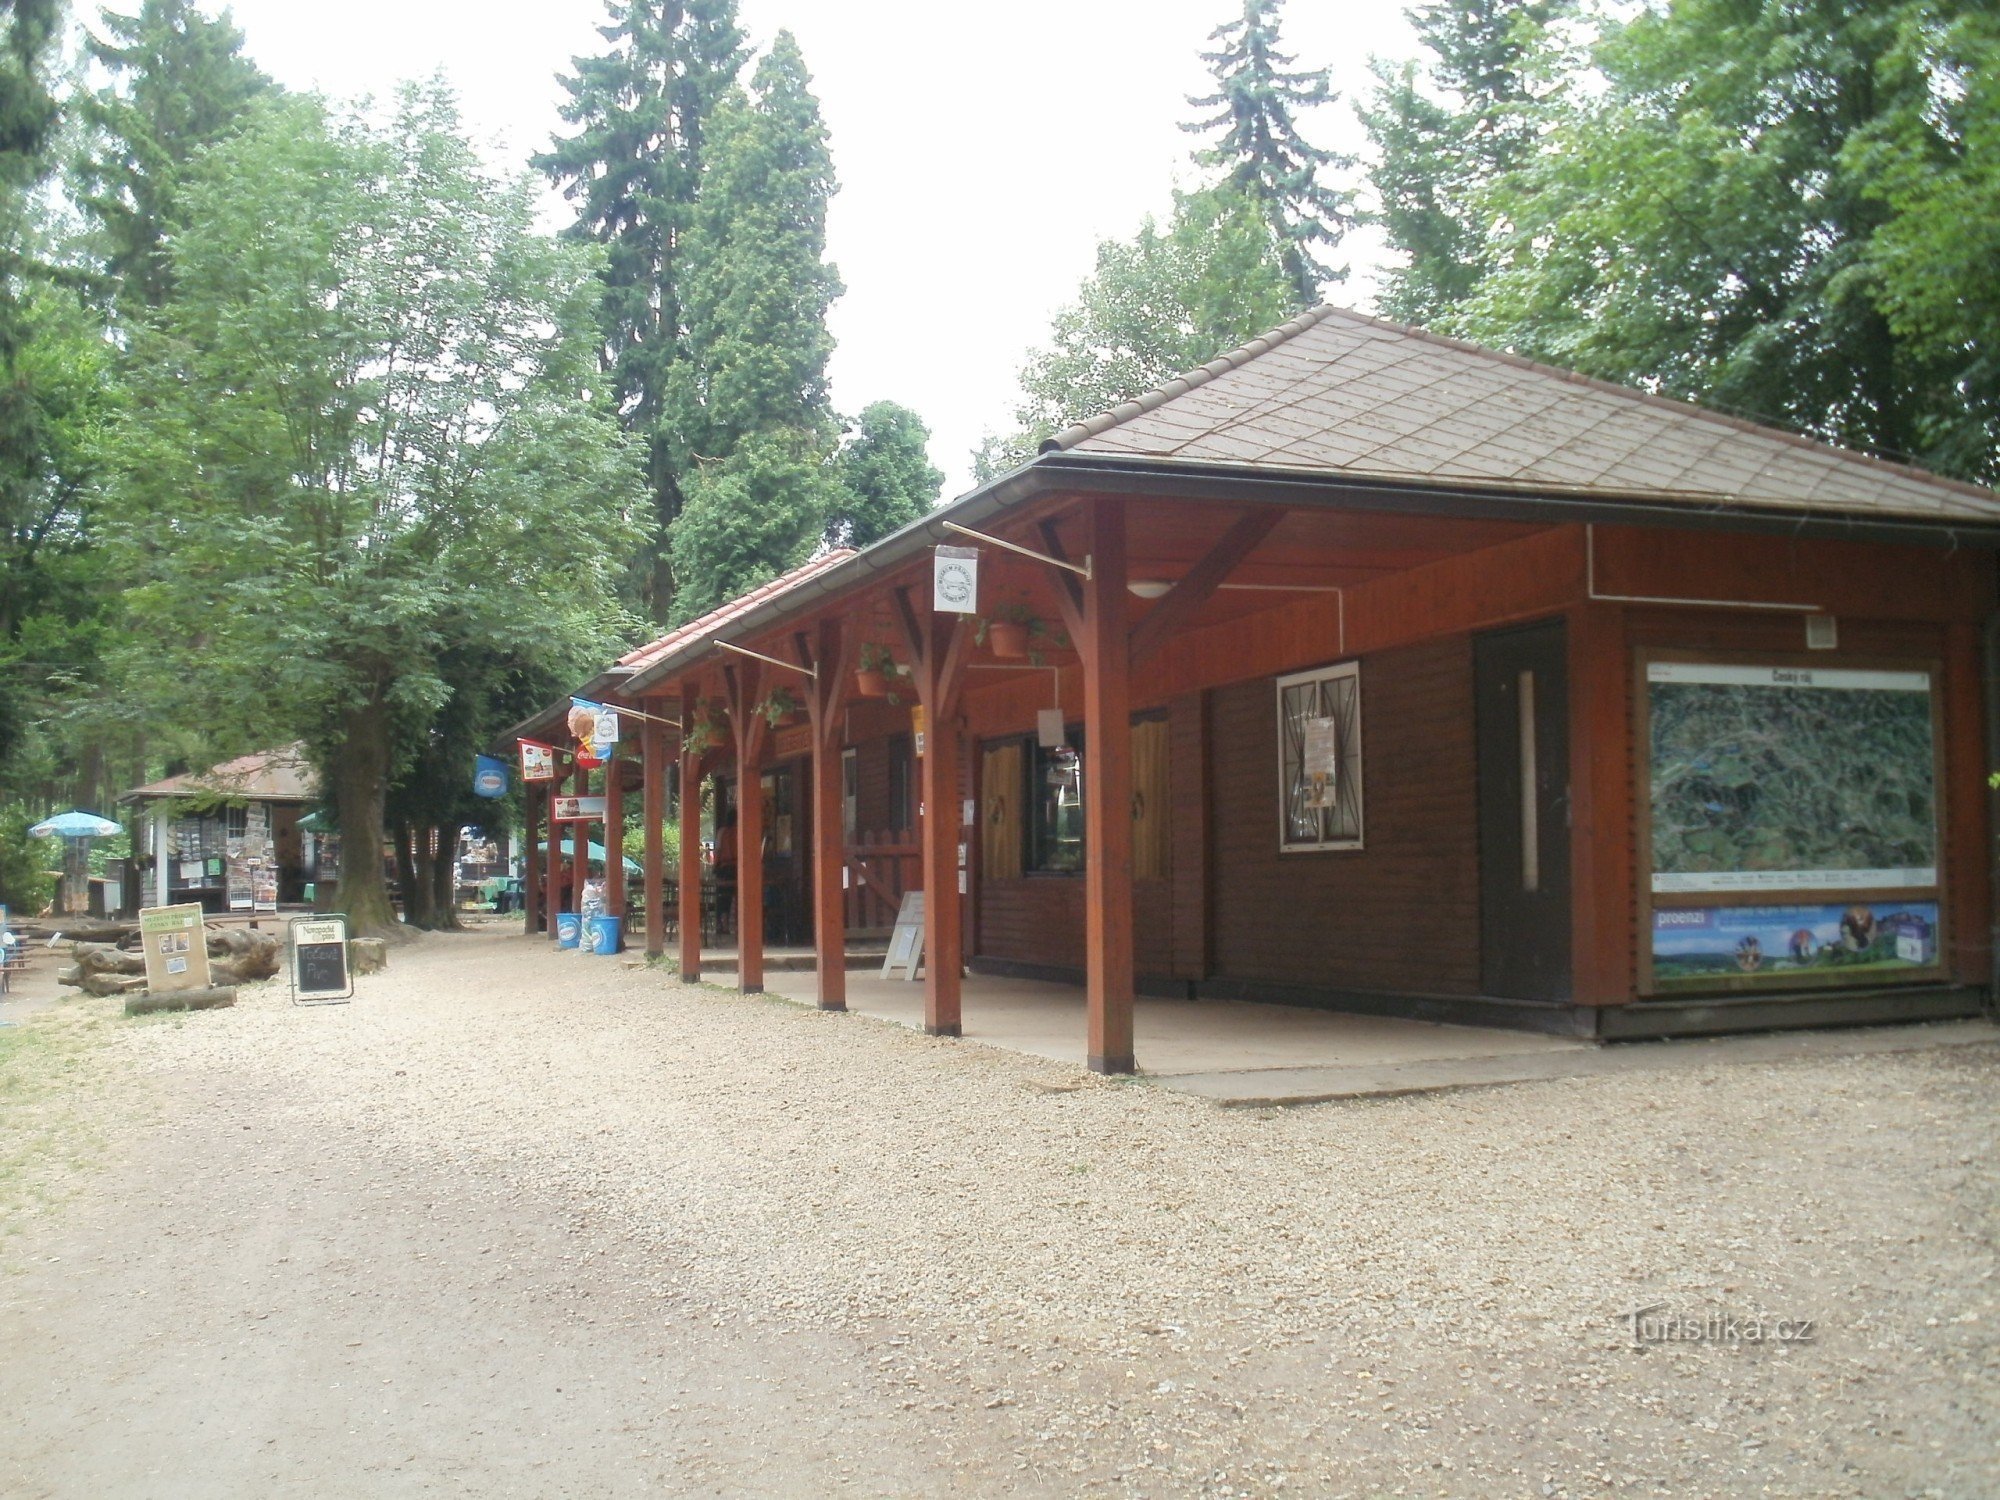 Прахов - туристический центр Чешский рай, информационный центр